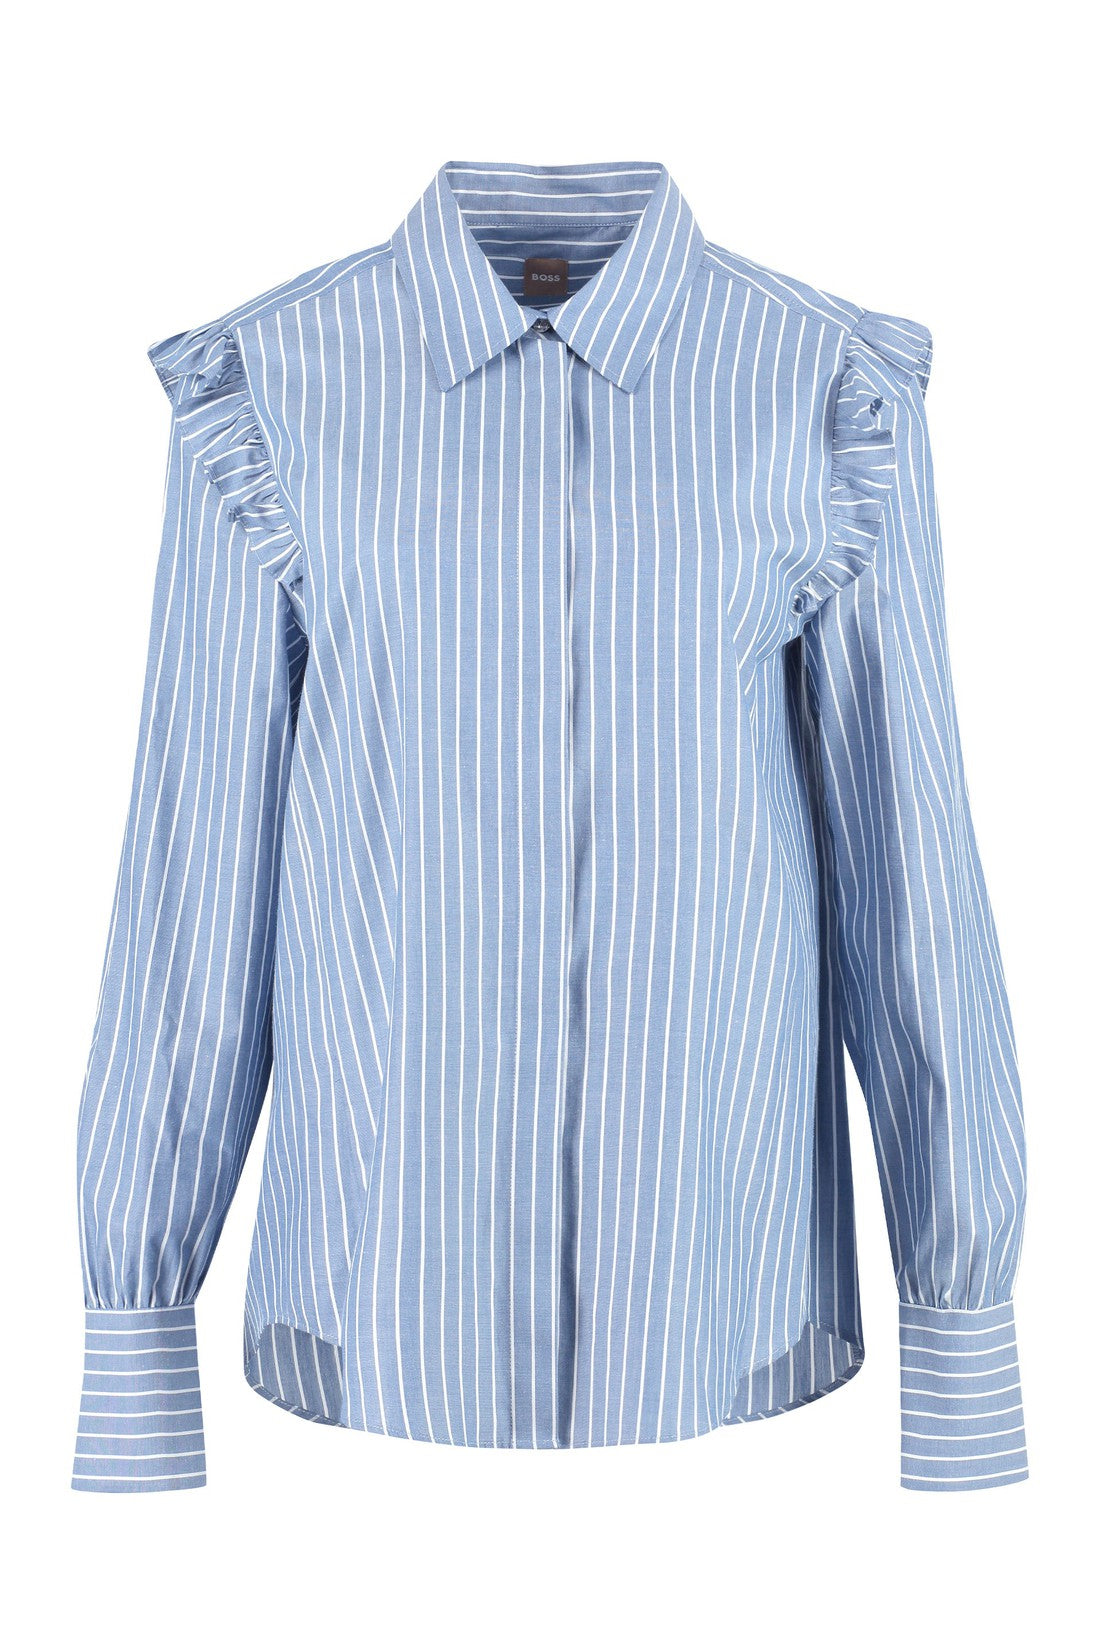 BOSS-OUTLET-SALE-Striped cotton shirt-ARCHIVIST